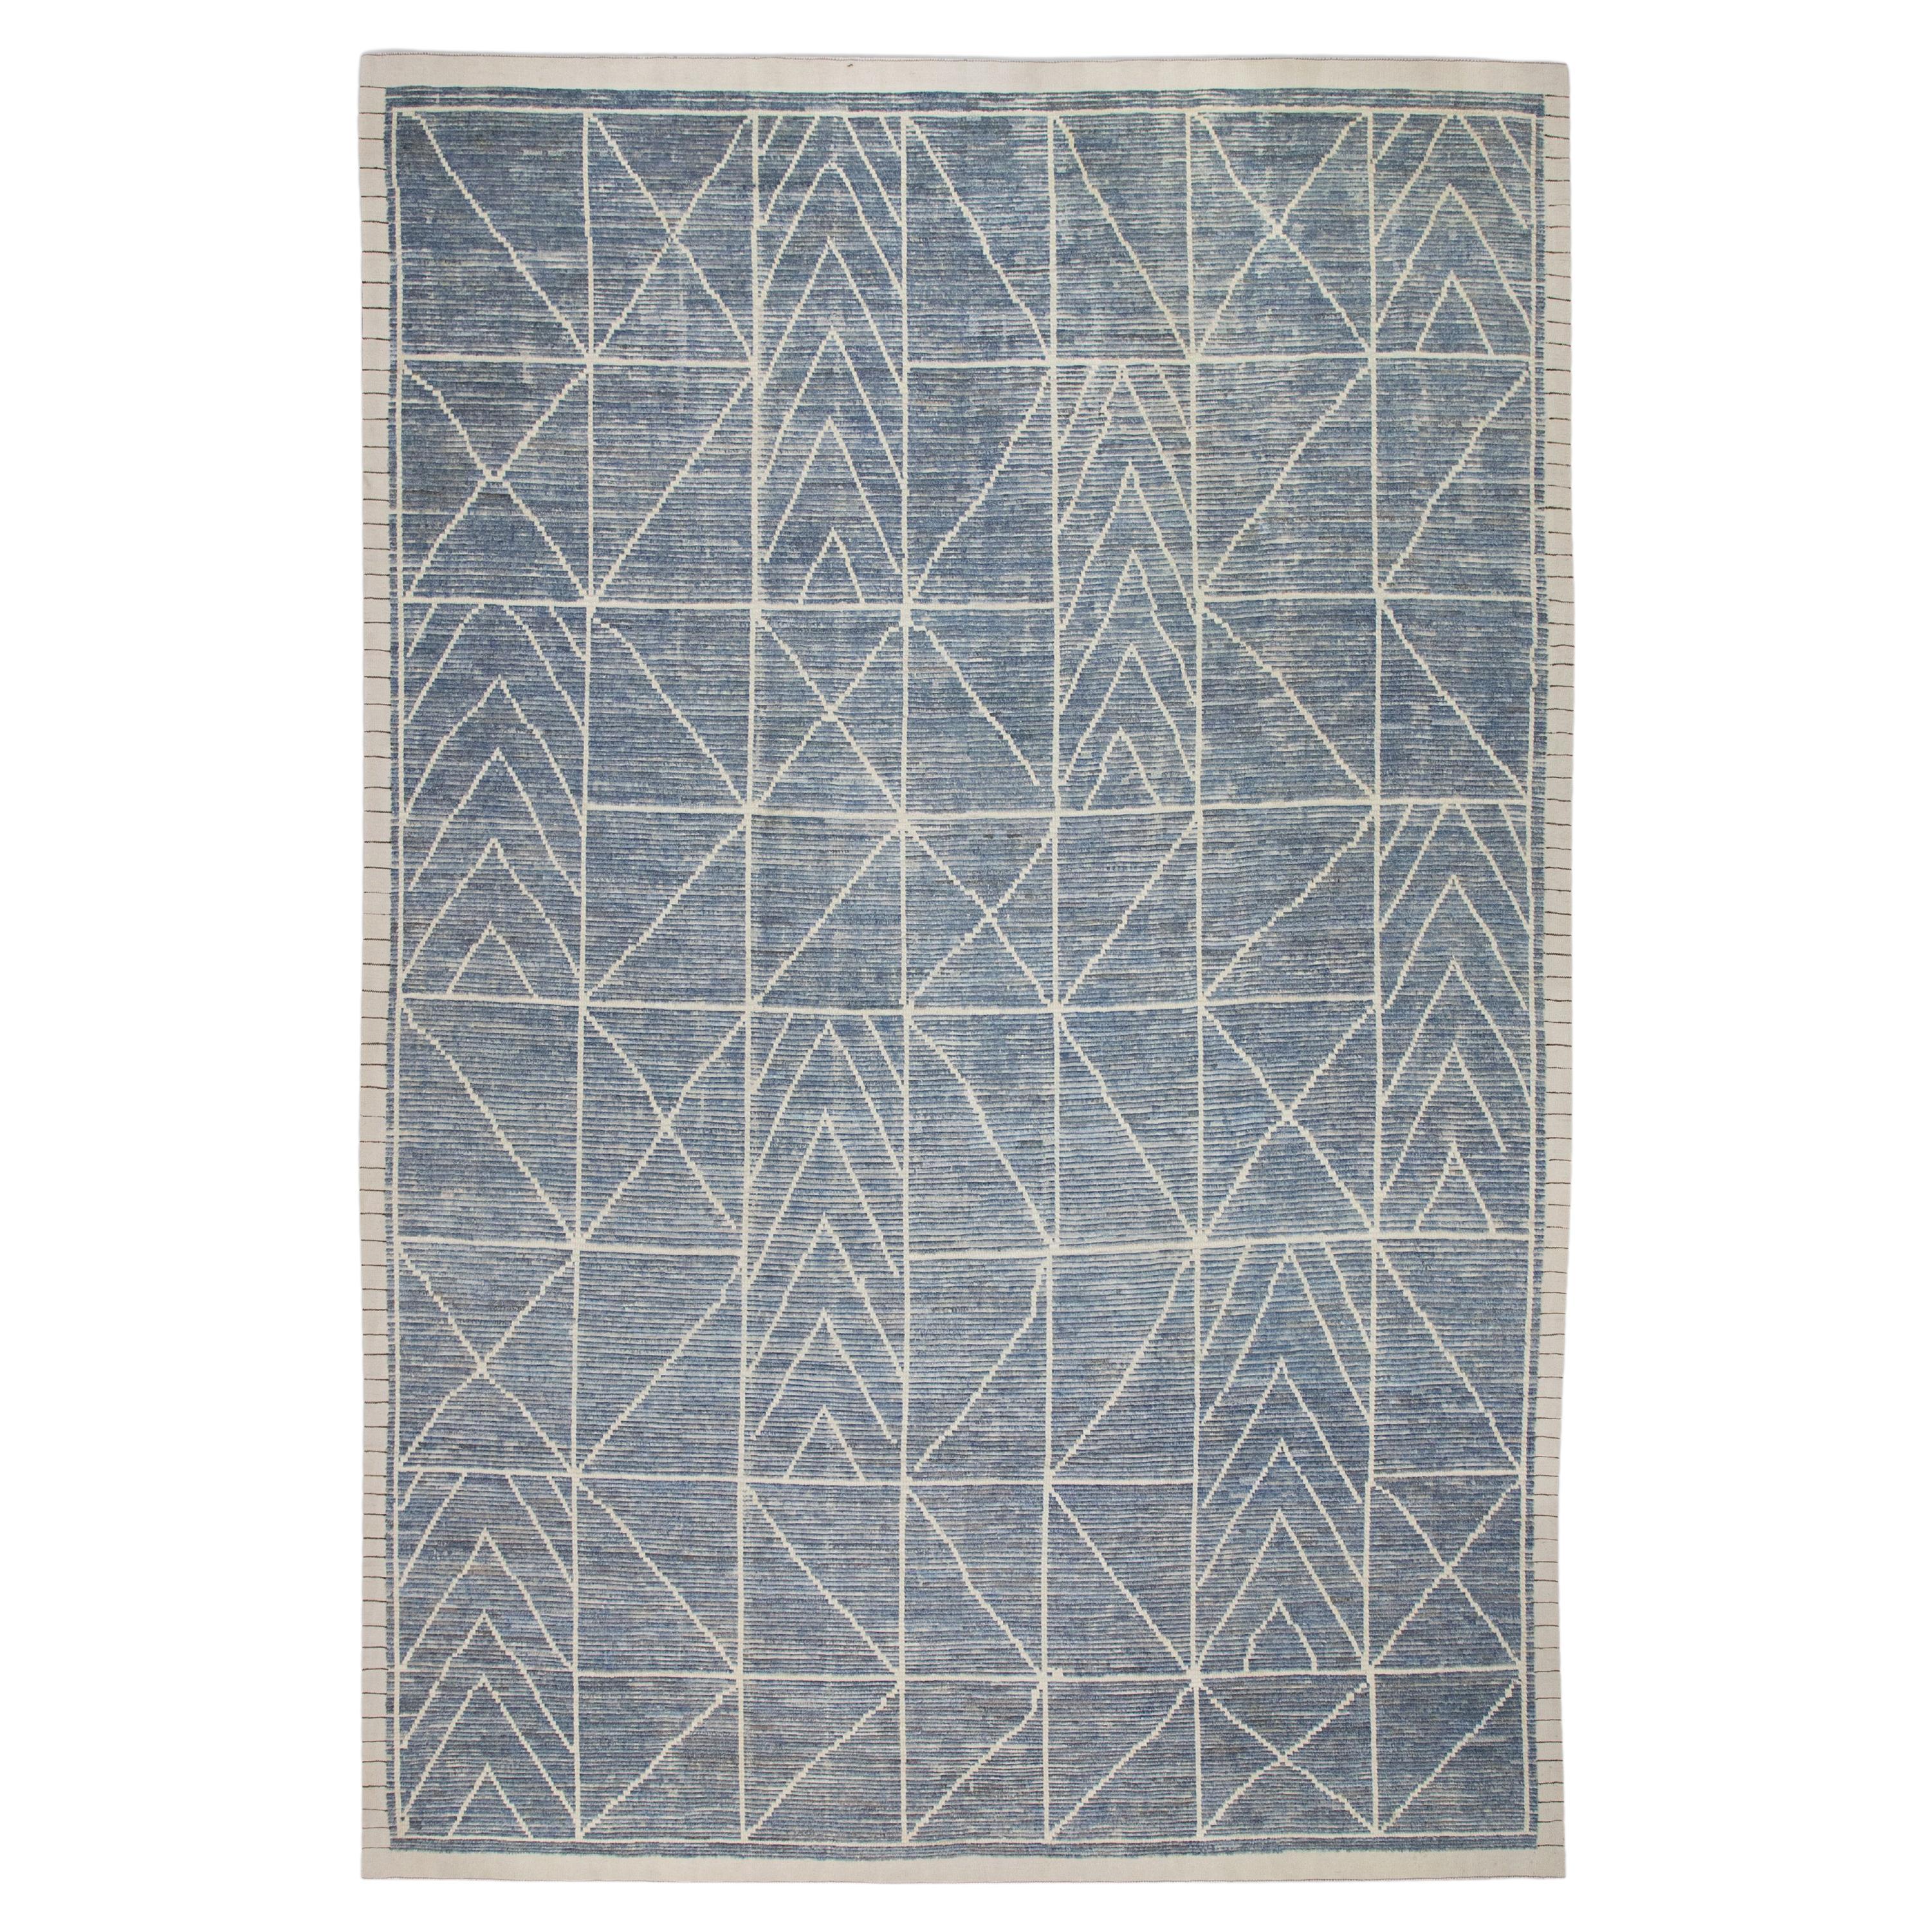  Handmade Wool Tulu Rug in Geometric Design 9'11" x 14'8"